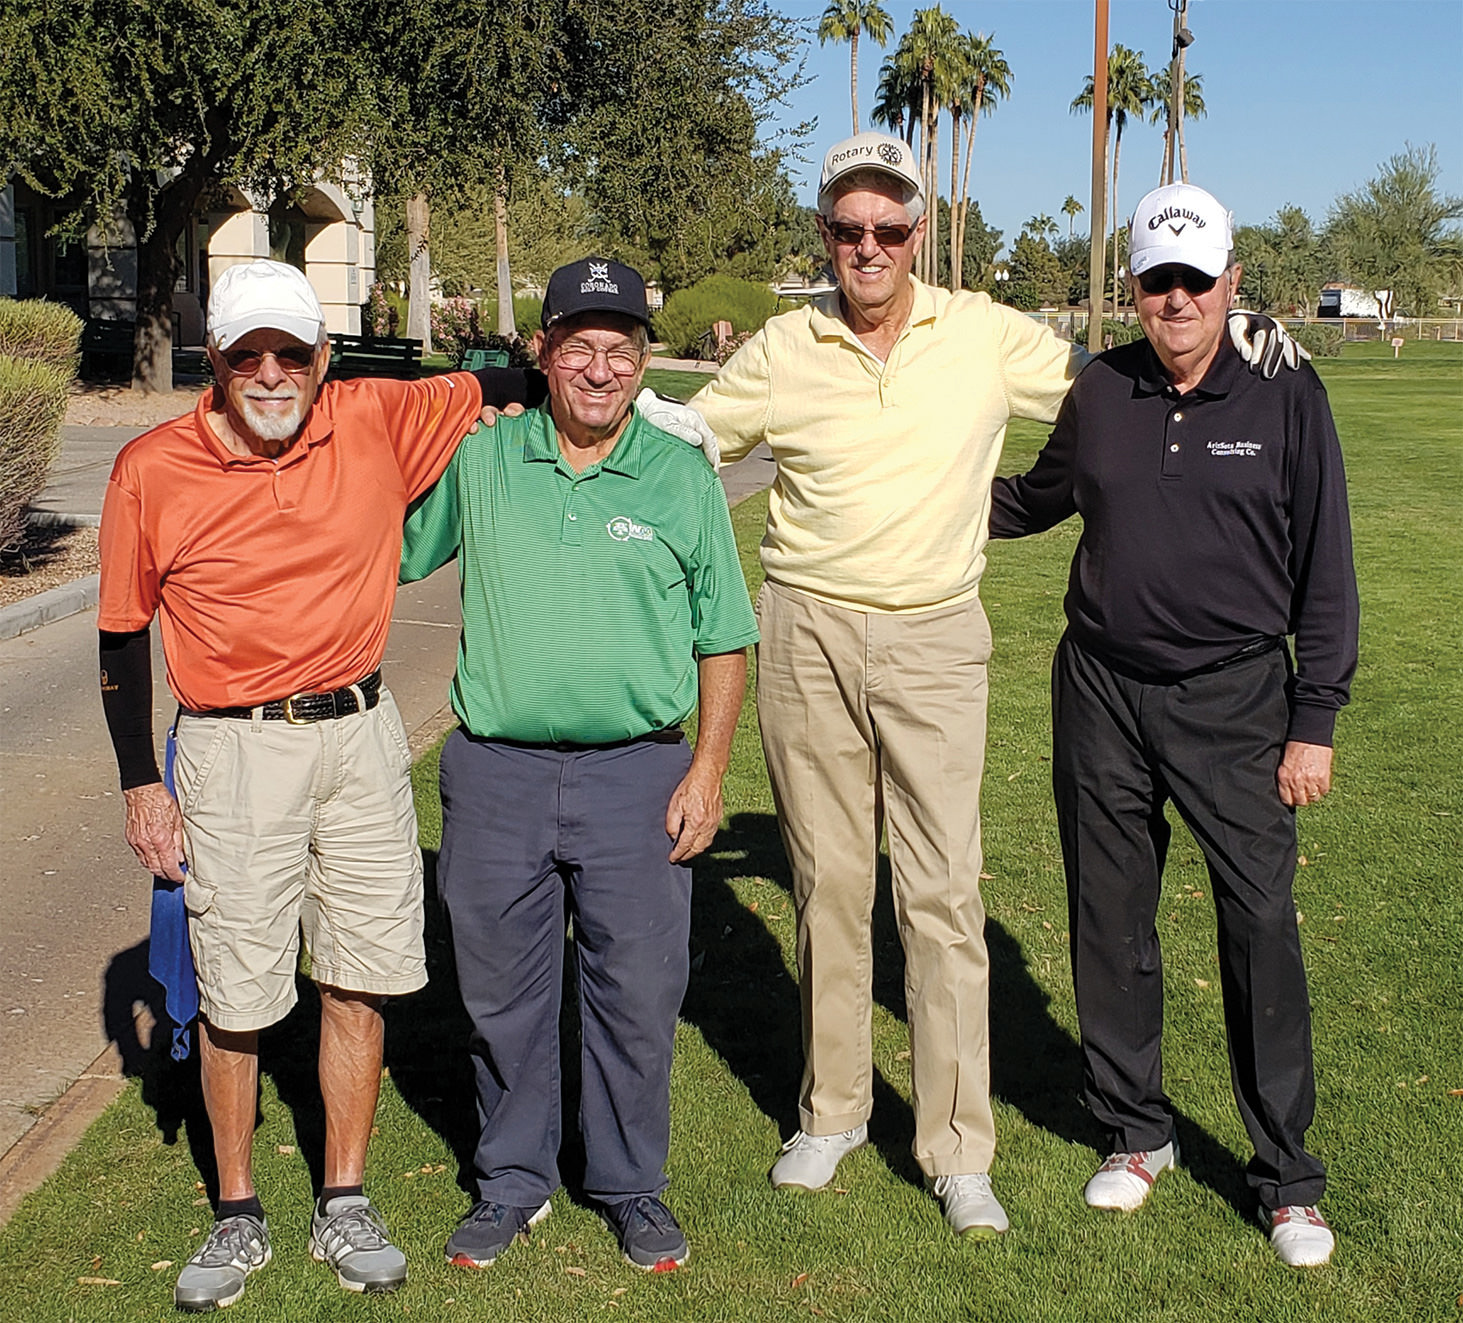 Team Anderson: Bruce McCorkel, Bob Clark, Ed Anderson, and David Mork